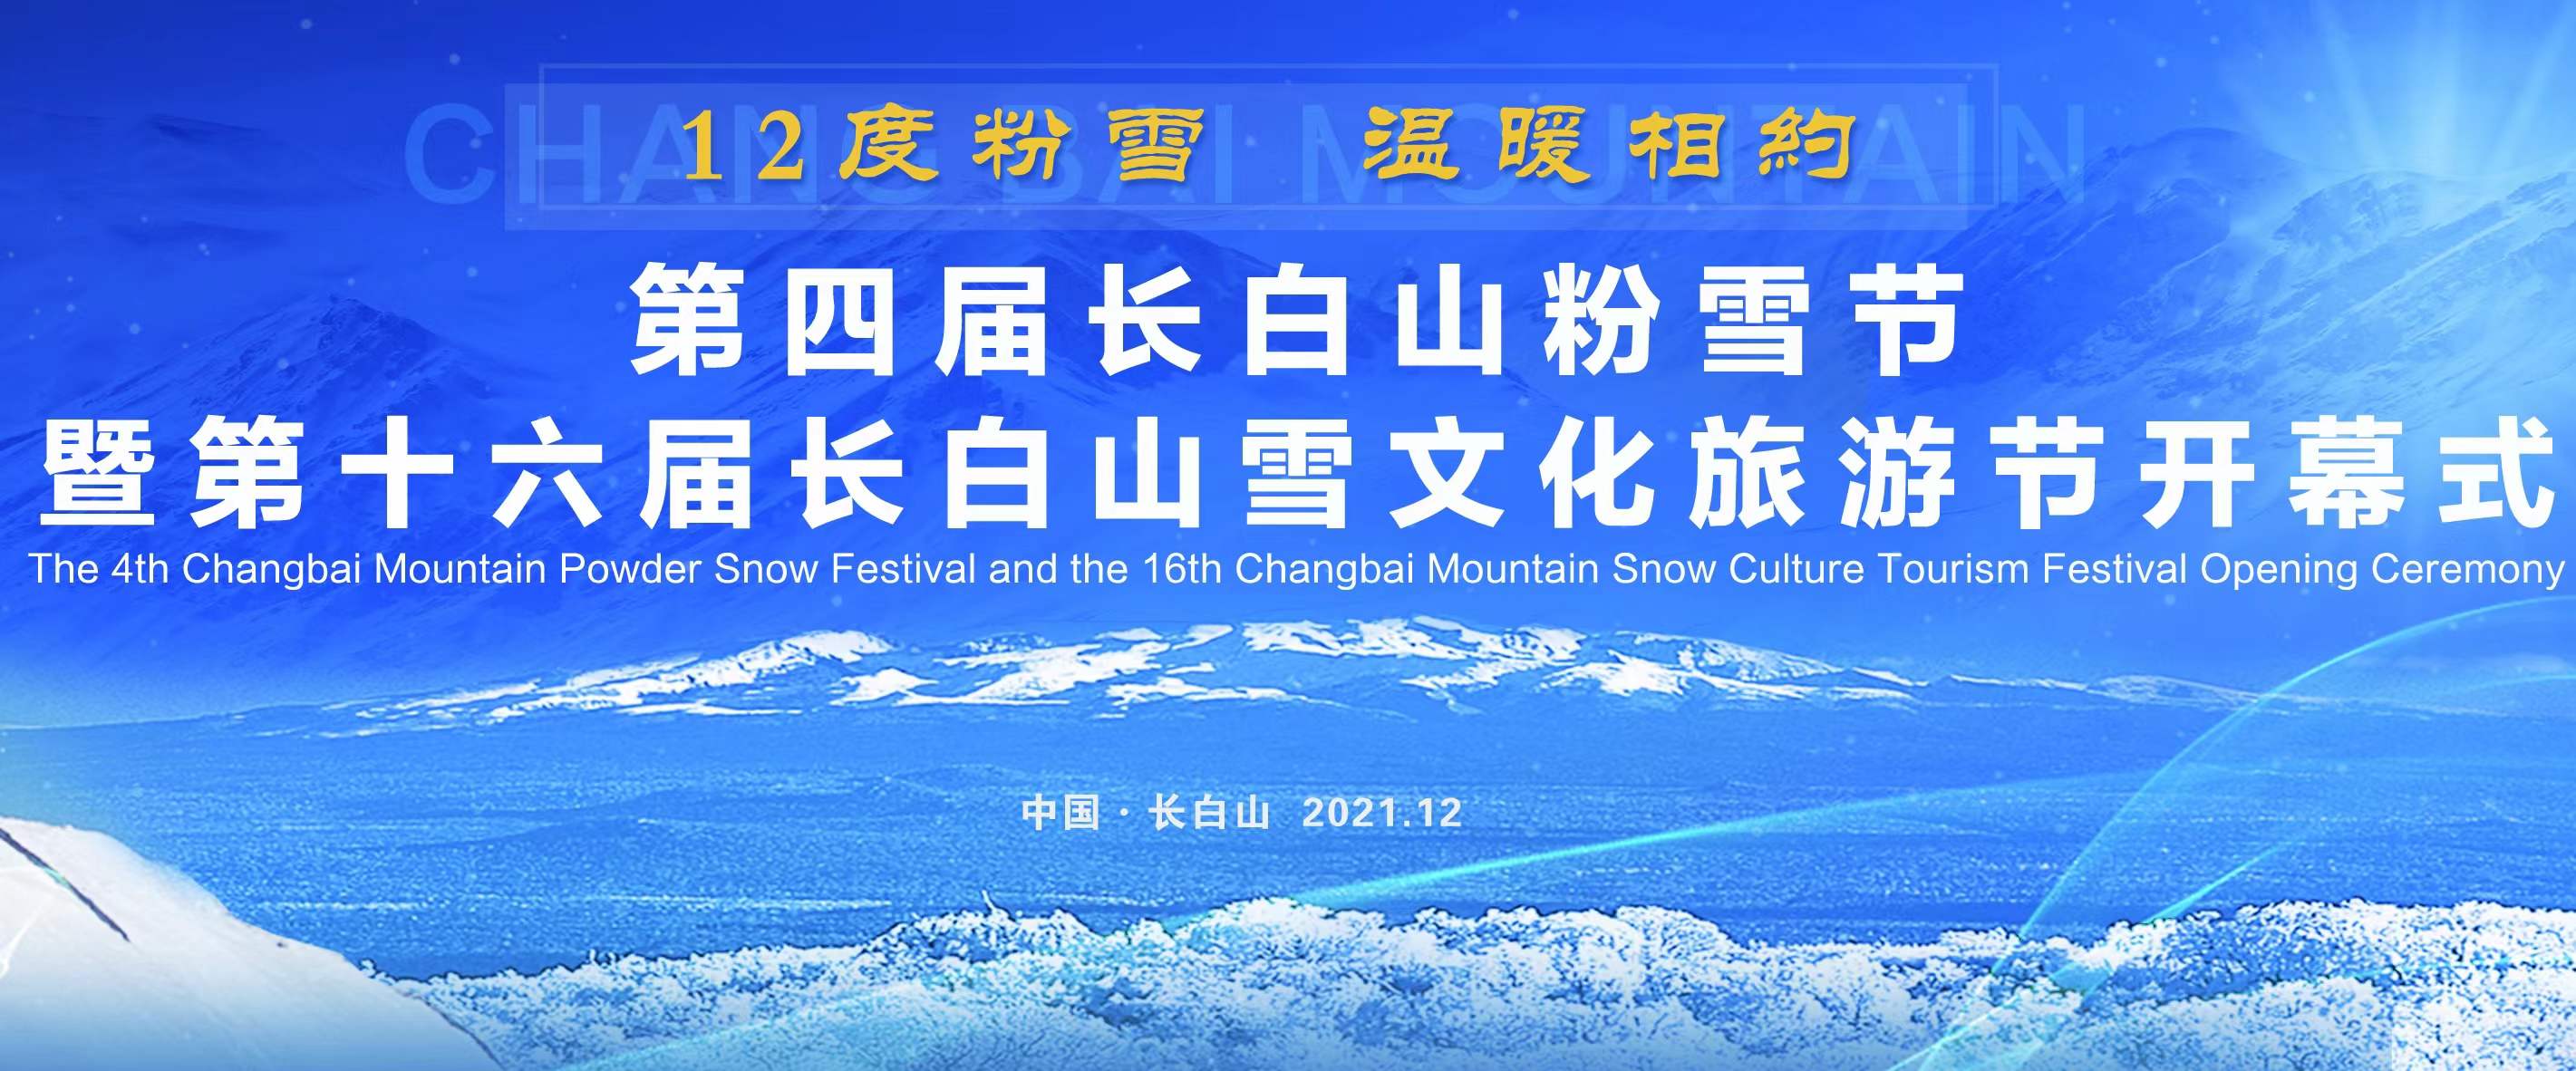 第四屆長白山粉雪節暨第十六屆長白山雪文化旅游節開幕式